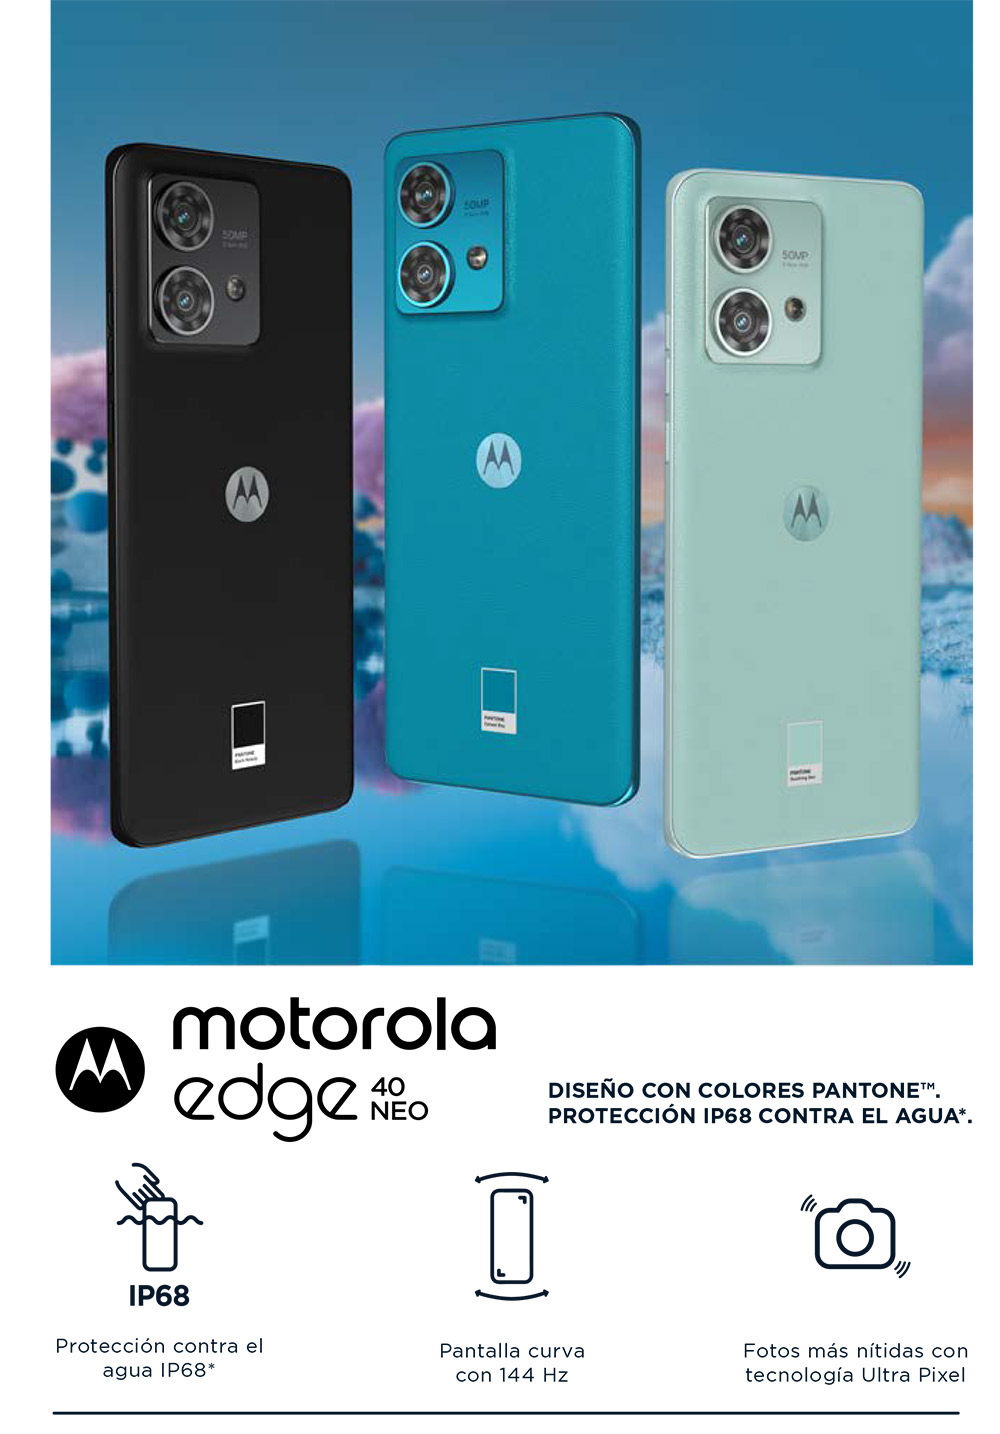 Motorola edge 40 Neo: características, precio y disponibilidad